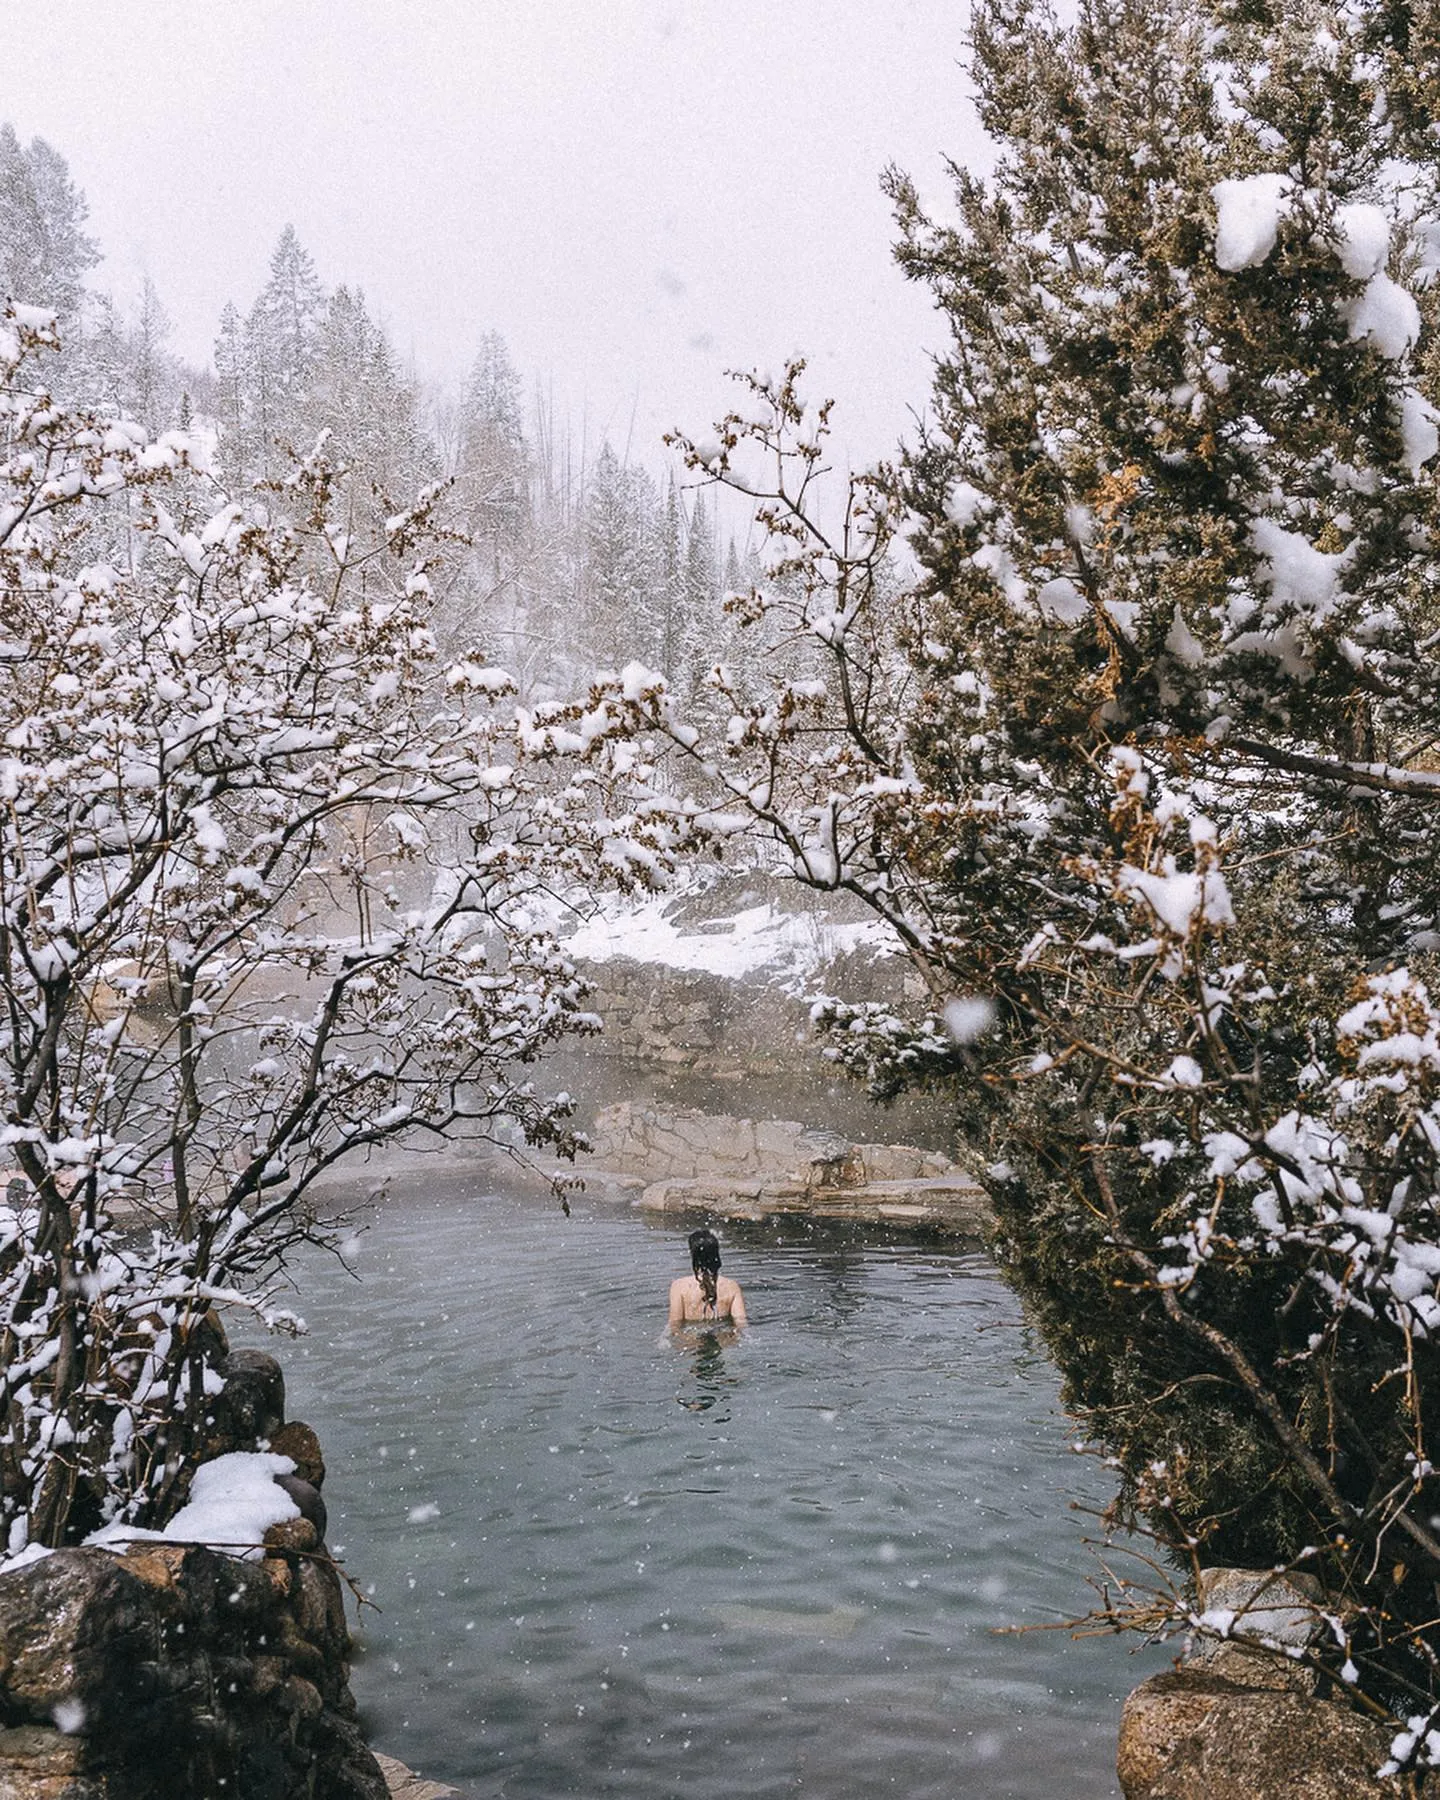 Hot Springs in Idaho 8